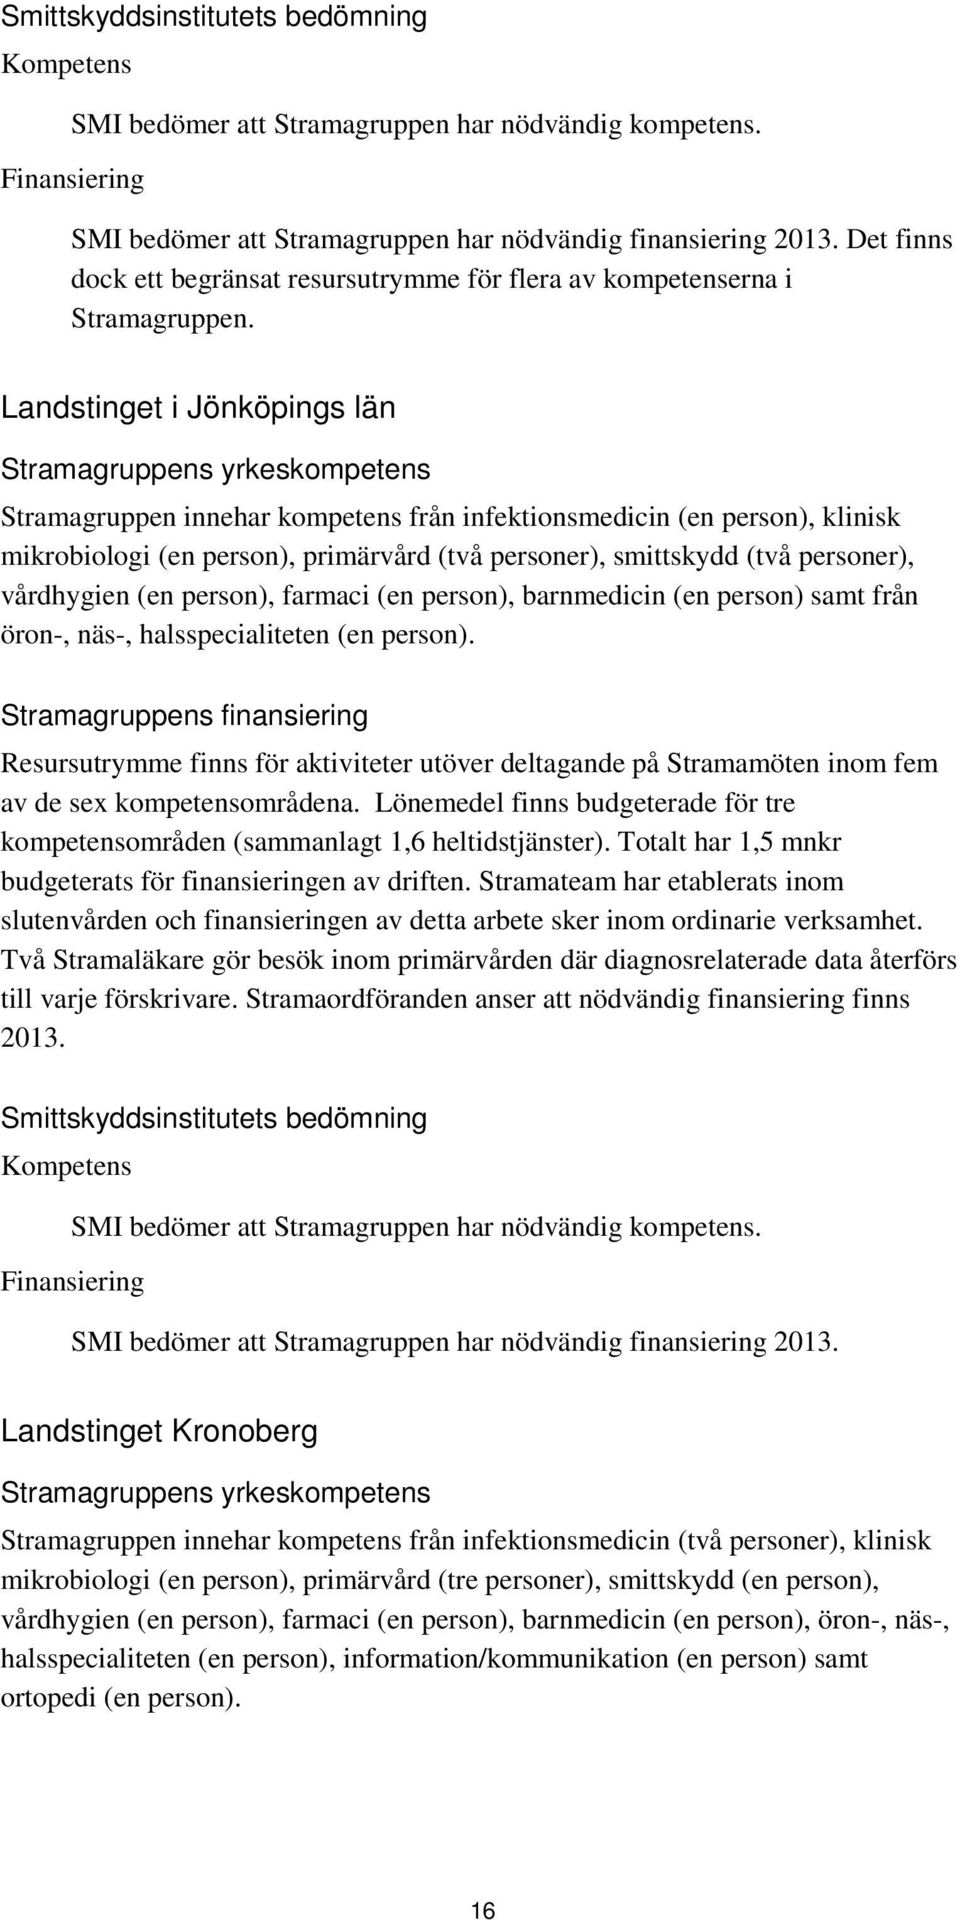 Landstinget i Jönköpings län Stramagruppens yrkeskompetens Stramagruppen innehar kompetens från infektionsmedicin (en person), klinisk mikrobiologi (en person), primärvård (två personer), smittskydd